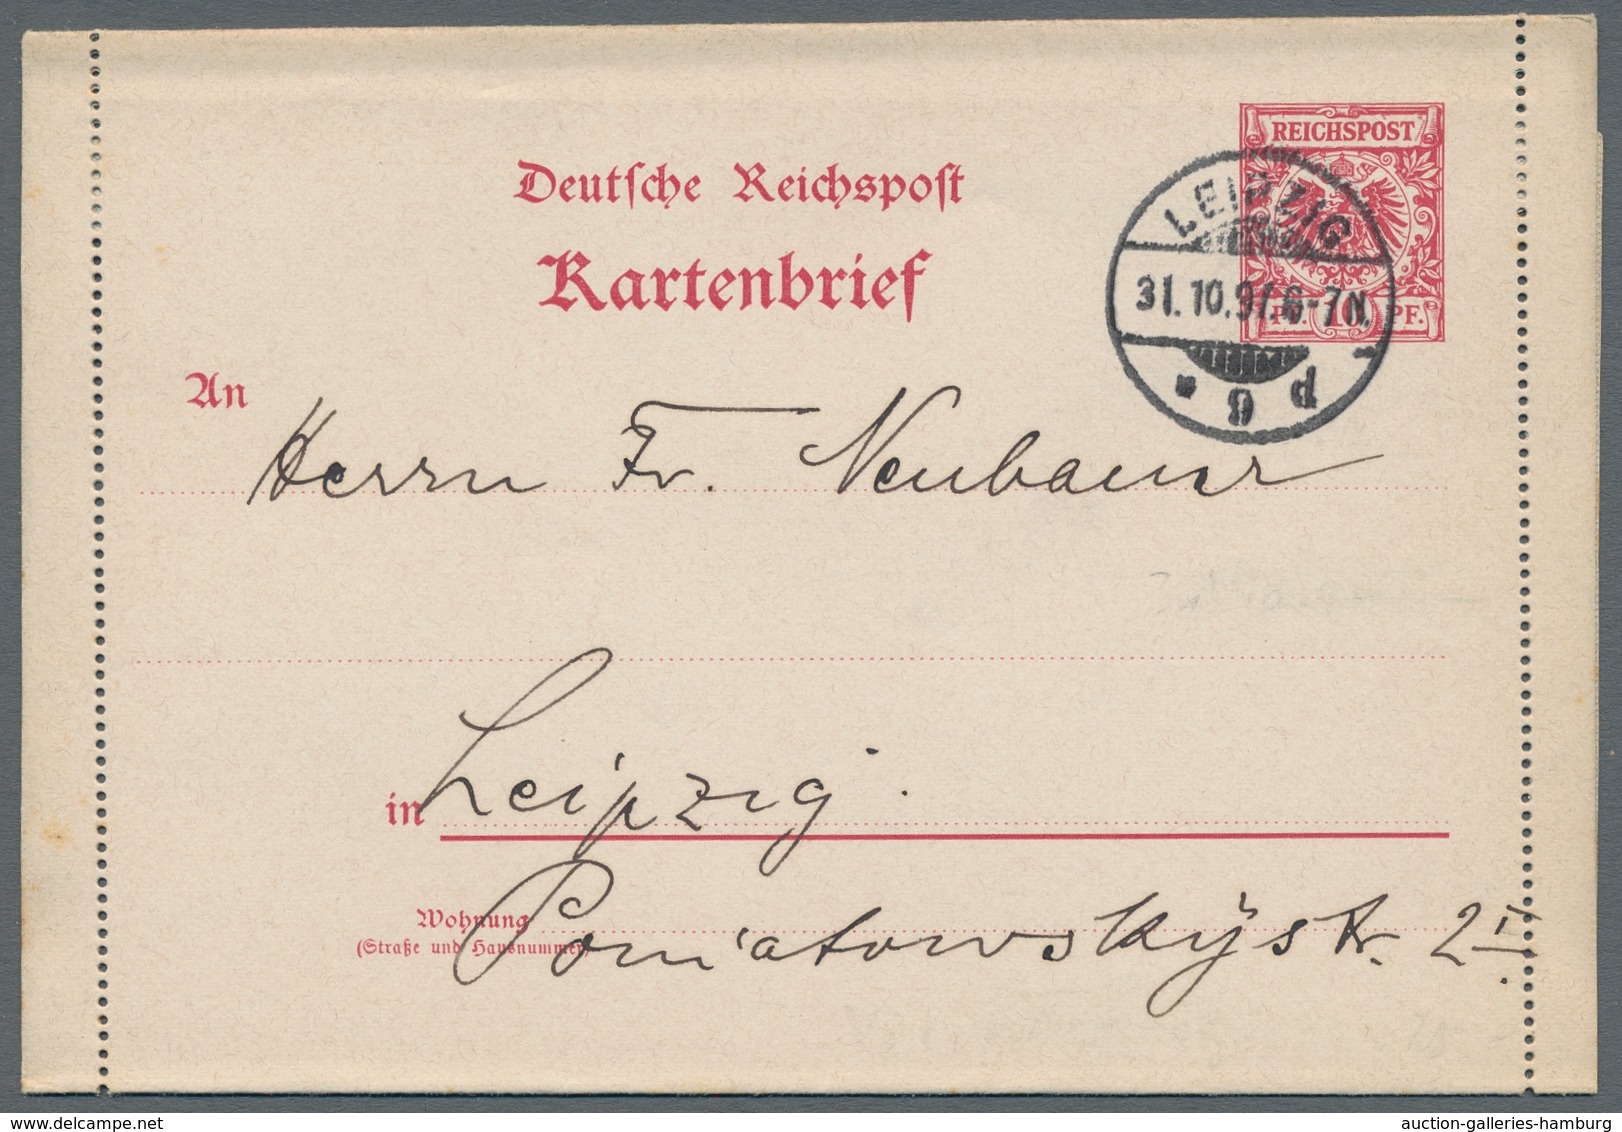 Deutsches Reich - Ganzsachen: 1897, "10 Pfg. Krone/Adler", sechs mit Ersttagsstempel 1. 11. 97 entwe